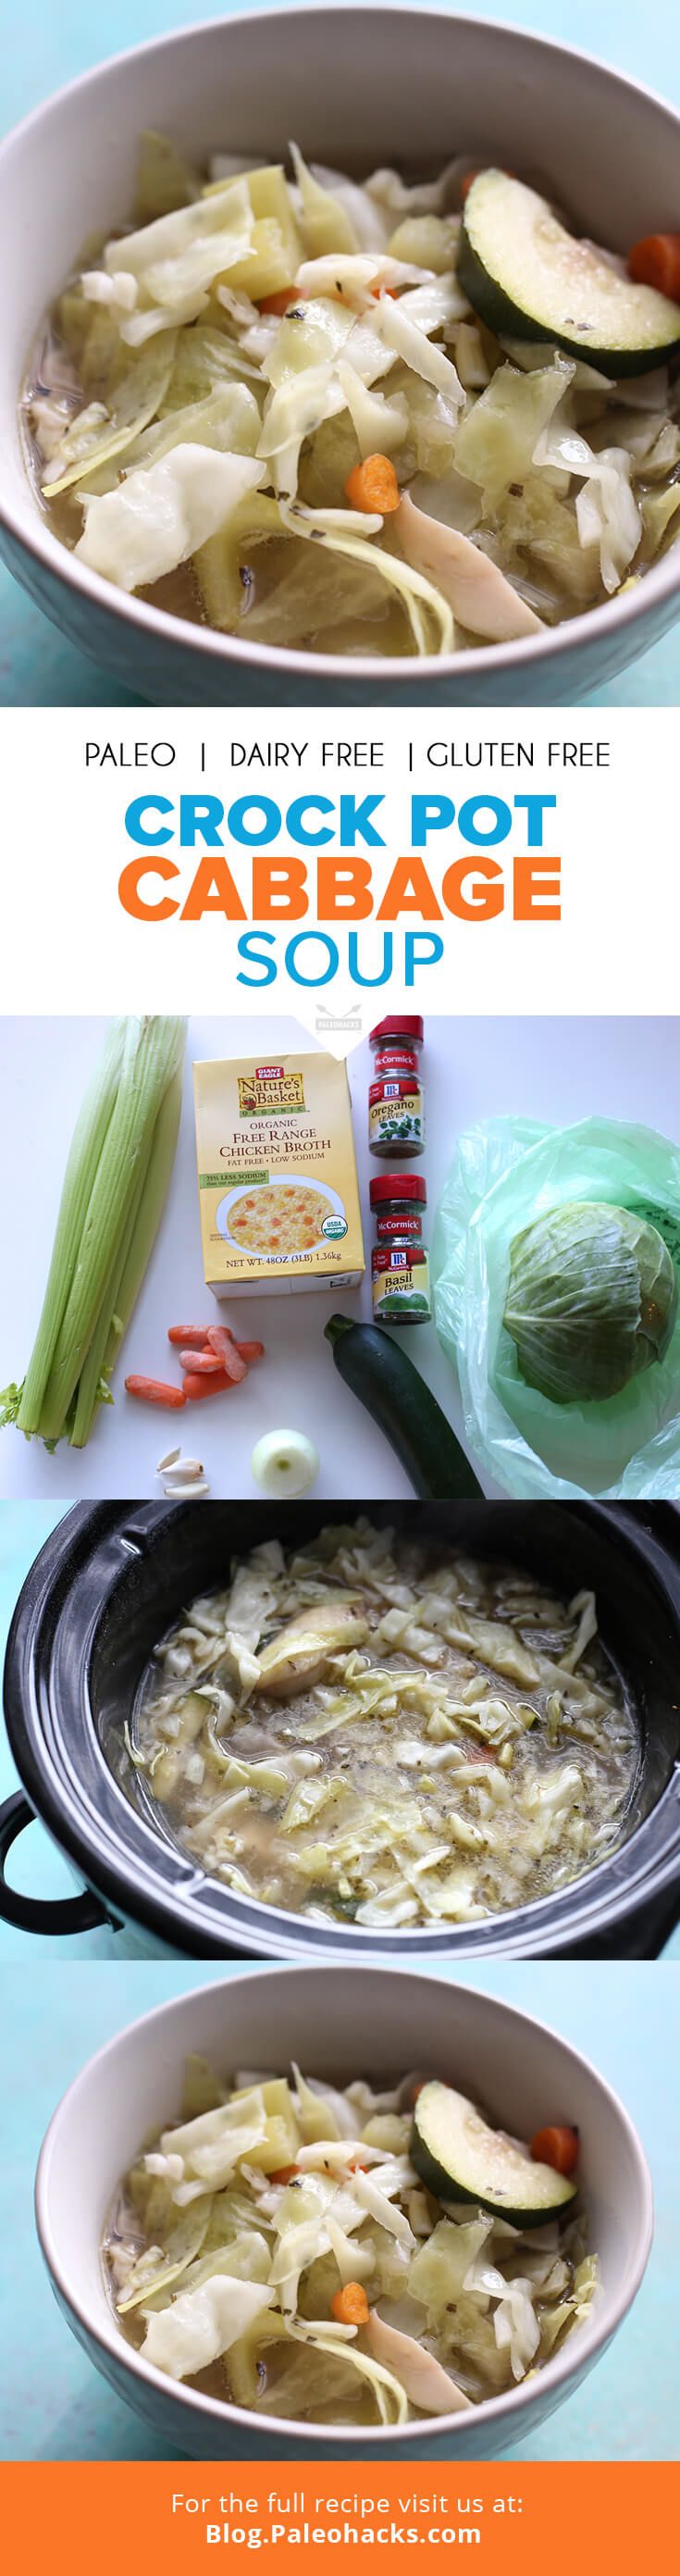 pin-Crock-pot-cabbage-soup